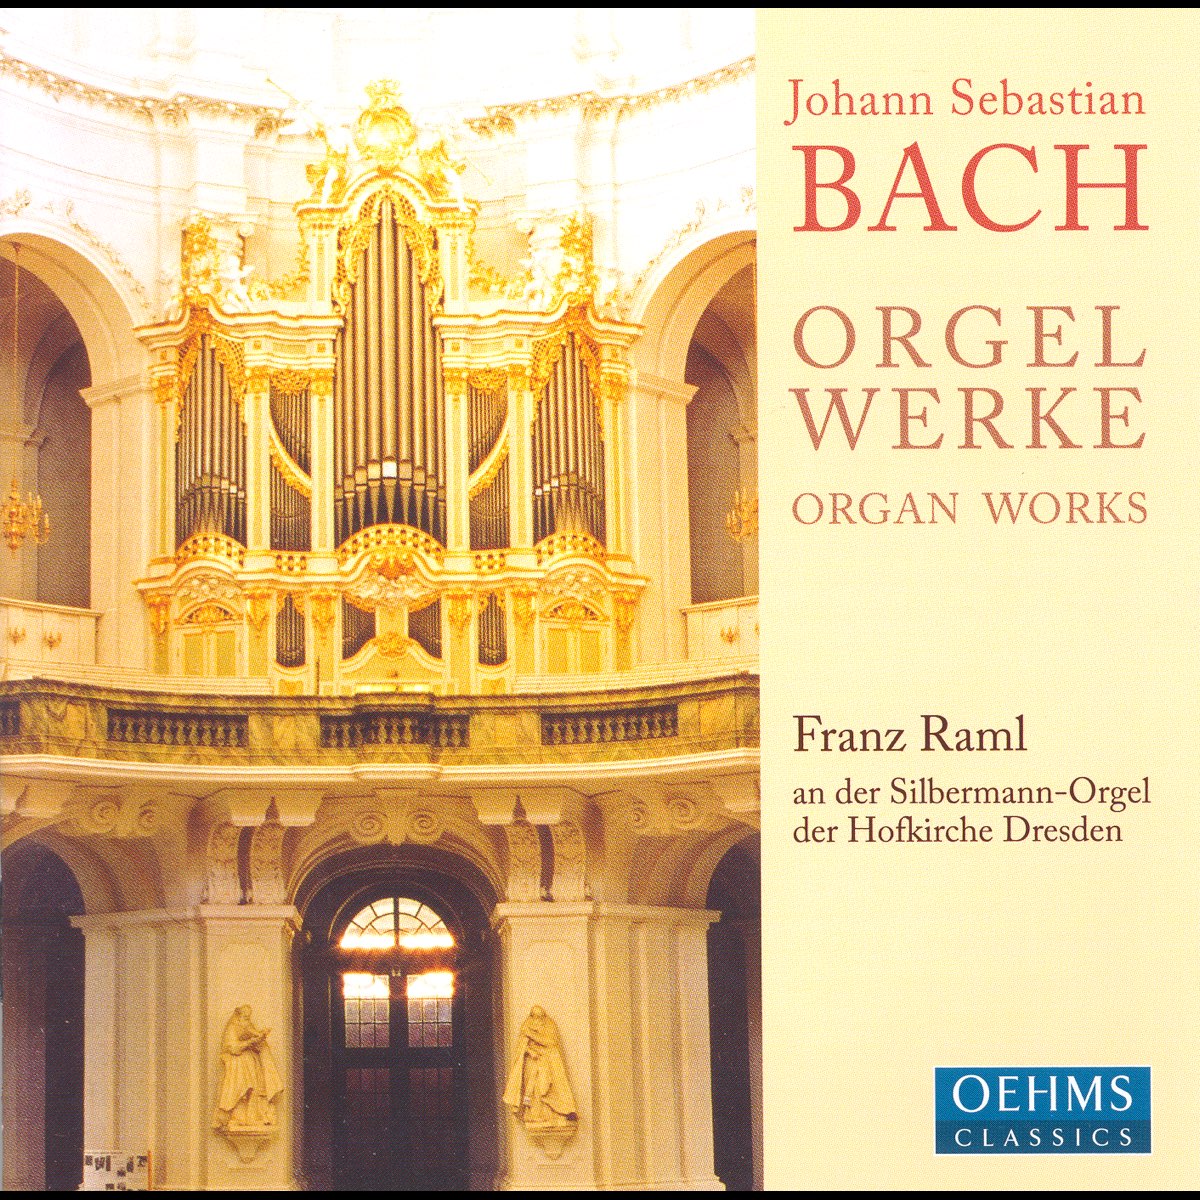 Иоганн Себастьян Бах орган. Иоганн Себастьян Бах — Allegro. Johann Sebastian Bach - Organ works. Орган Бах слушать.